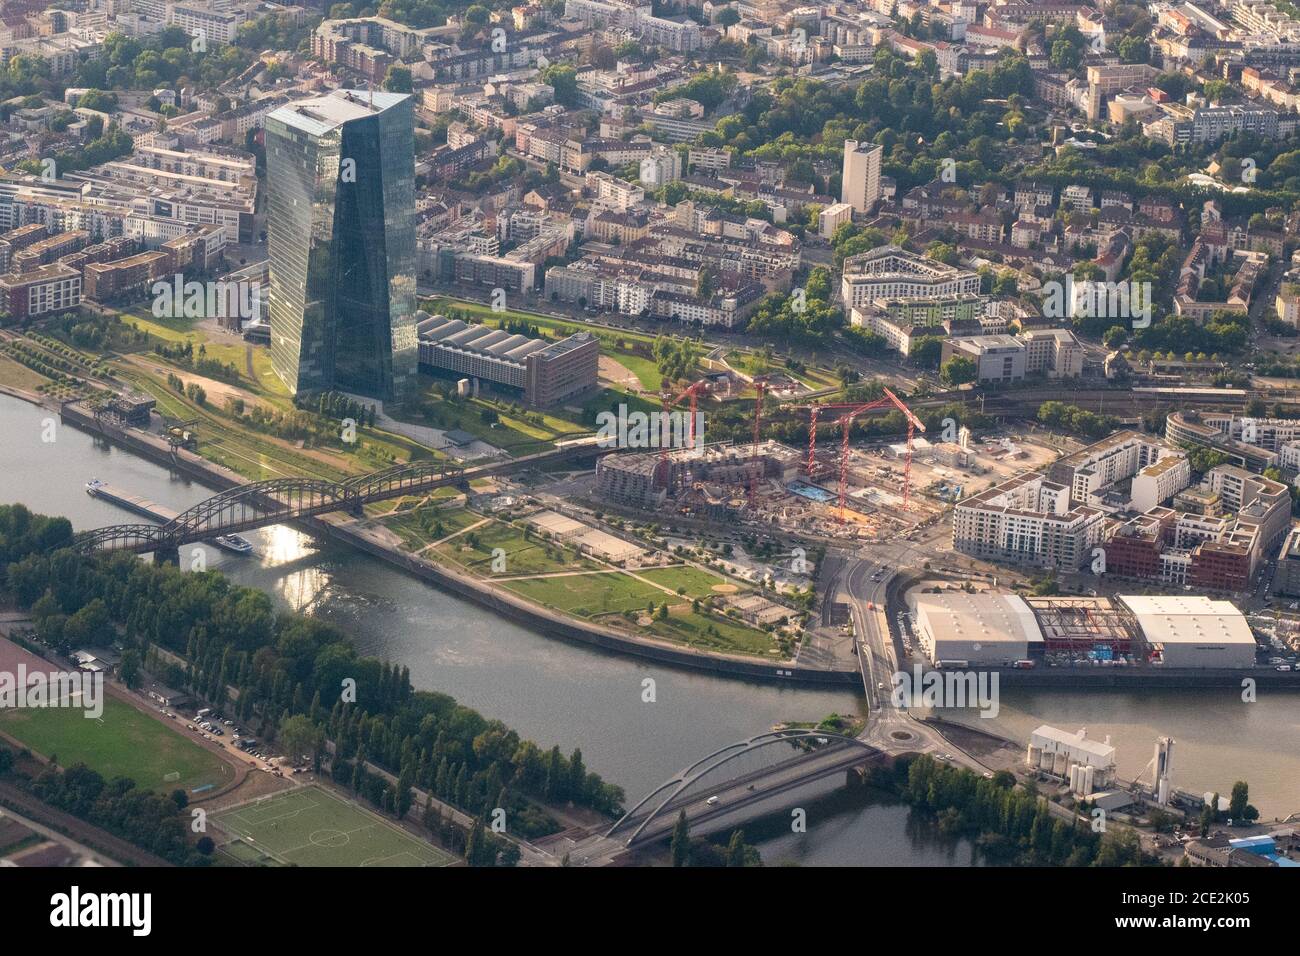 Banca centrale europea, Francoforte, Germania - Vista aerea del Frankfurt East End (Ostenda), compreso lo sviluppo del quartiere Hafenpark Foto Stock